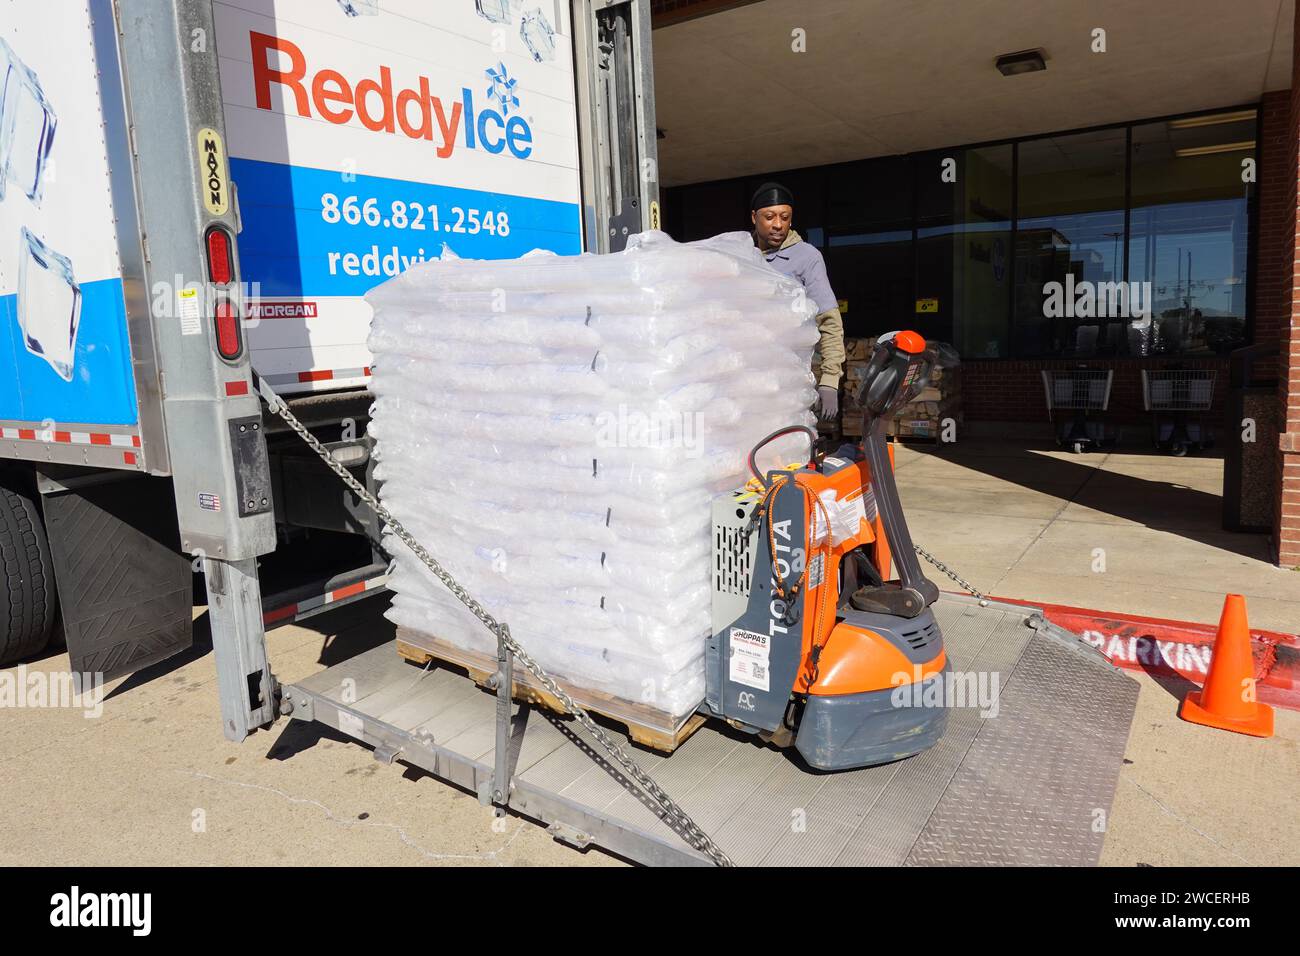 Homme afro-américain livrant de la glace à une épicerie Kroger à Bedford TX - novembre 2023 Banque D'Images